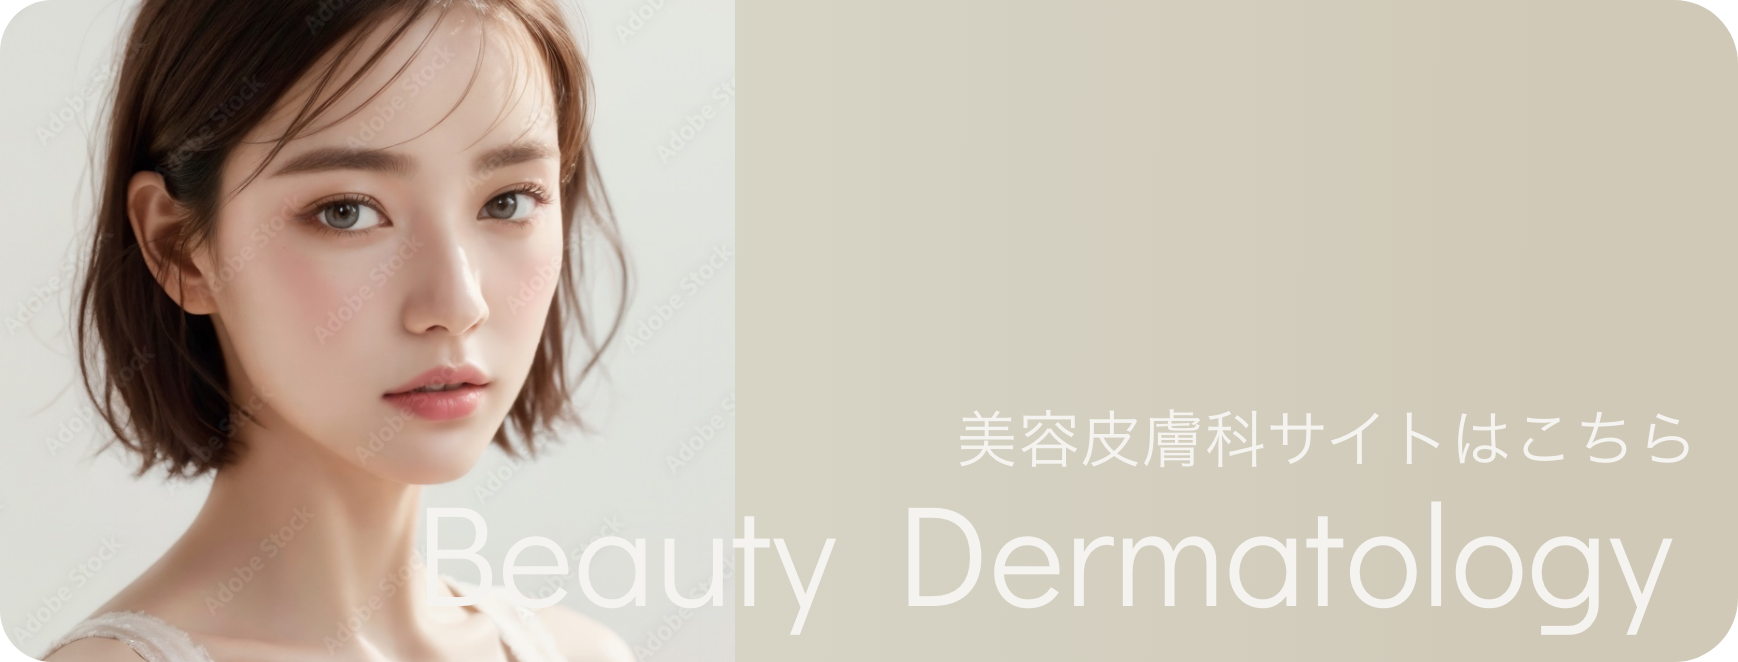 美容皮膚科サイトはこちら Beauty Dermatology